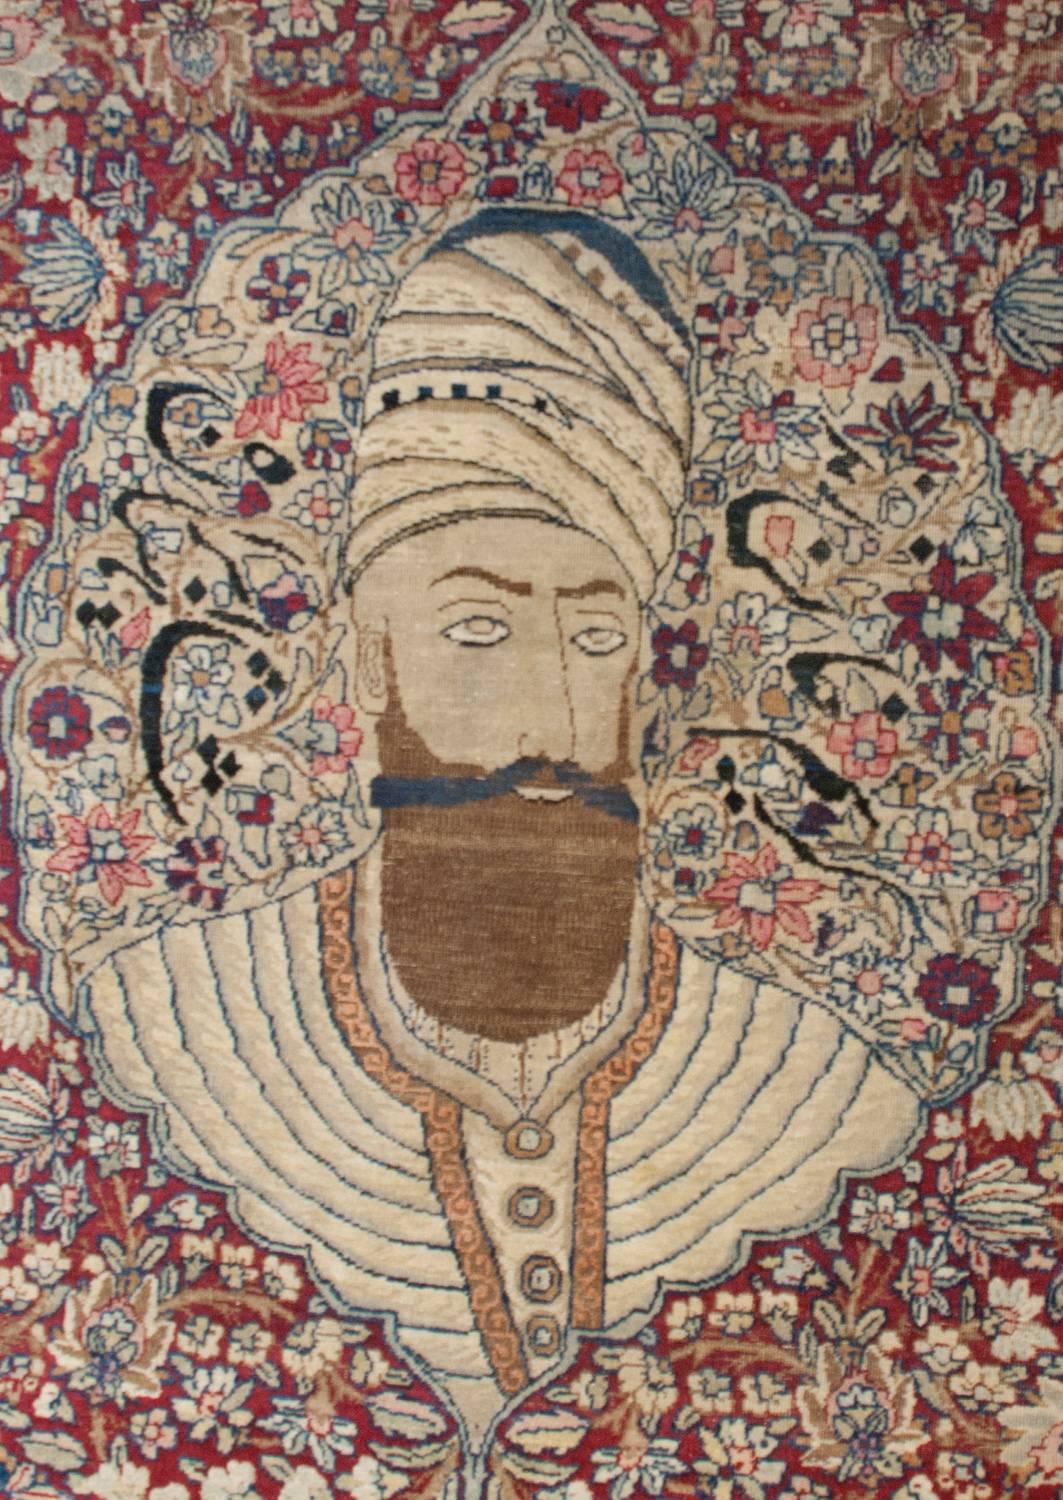 Remarquable tapis persan Kirman du 19e siècle, avec une magnifique représentation du fondateur de la dynastie Zandieh du 18e siècle, Karim Khan, au centre, tissé au milieu d'un magnifique champ de fleurs. Le portrait flotte au-dessus d'un champ